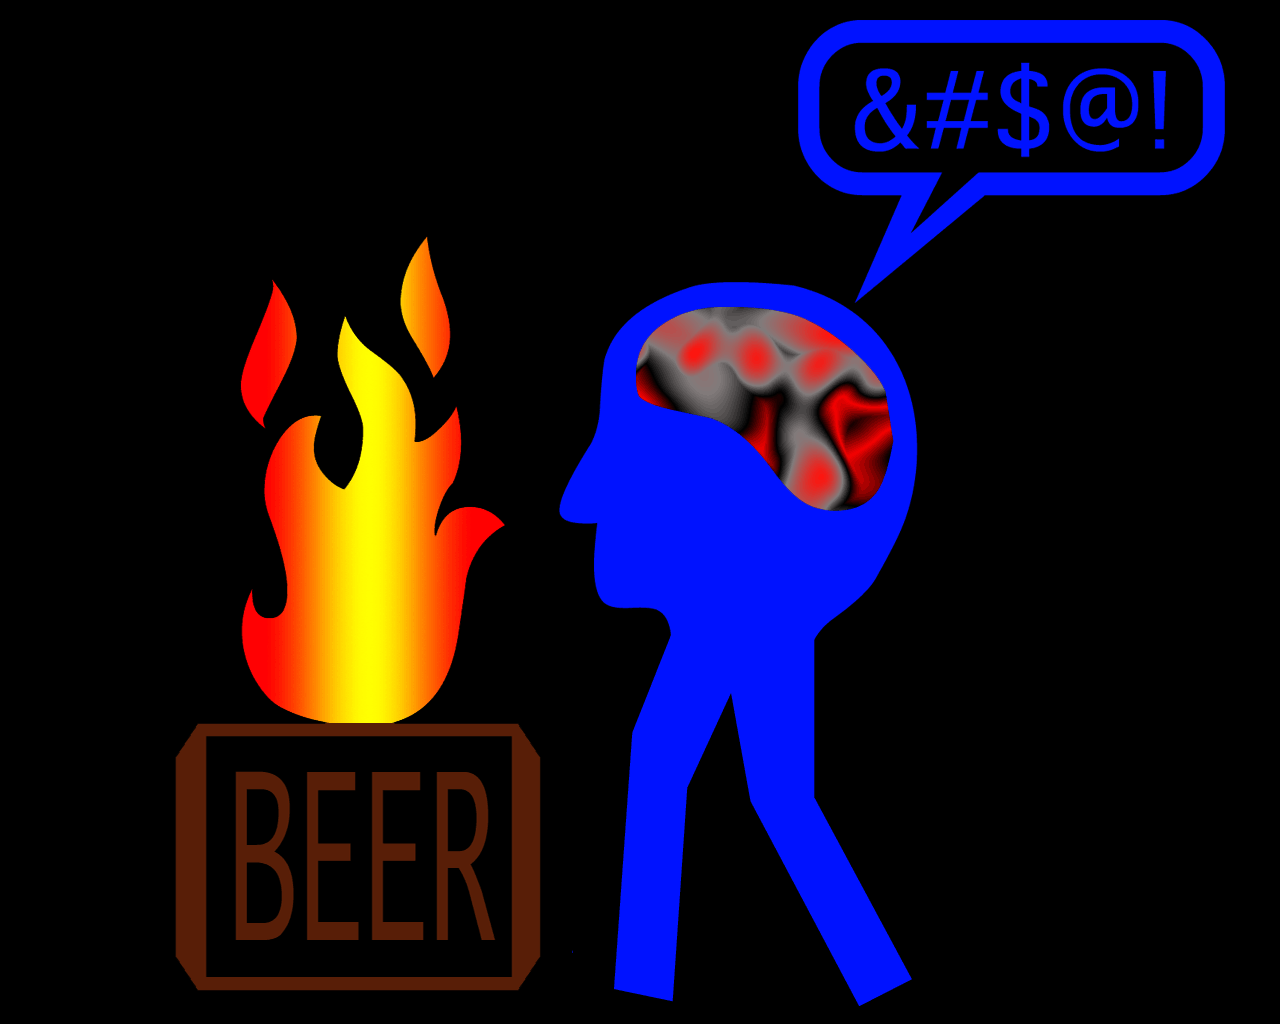 ../lemur-02-6/bd_beer1.gif